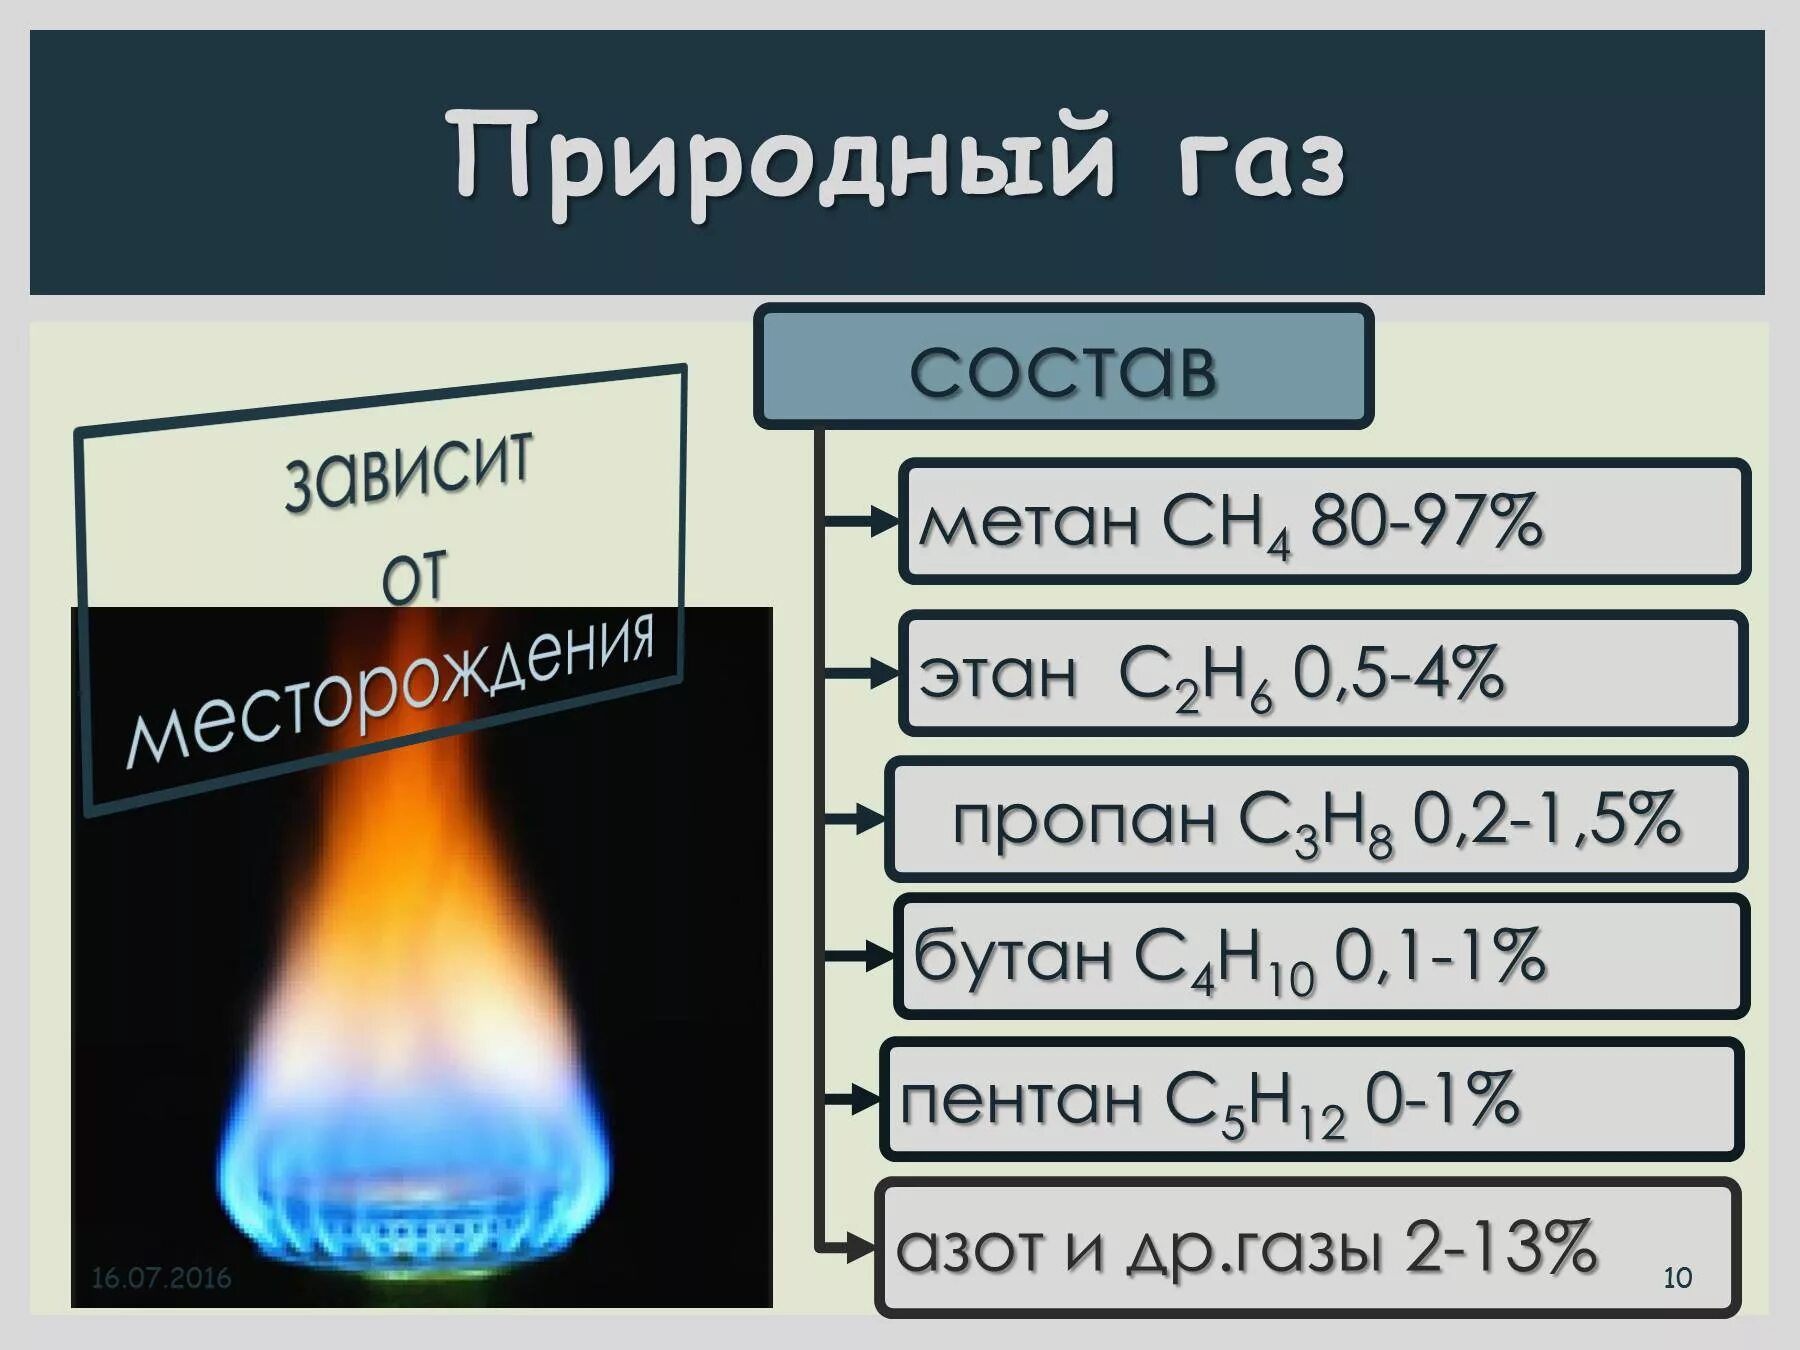 Содержание метана в природном. Состав смеси природного газа. Природный ГАЗ состав. Состав природного газа метан. Из чего состоит природный ГАЗ.